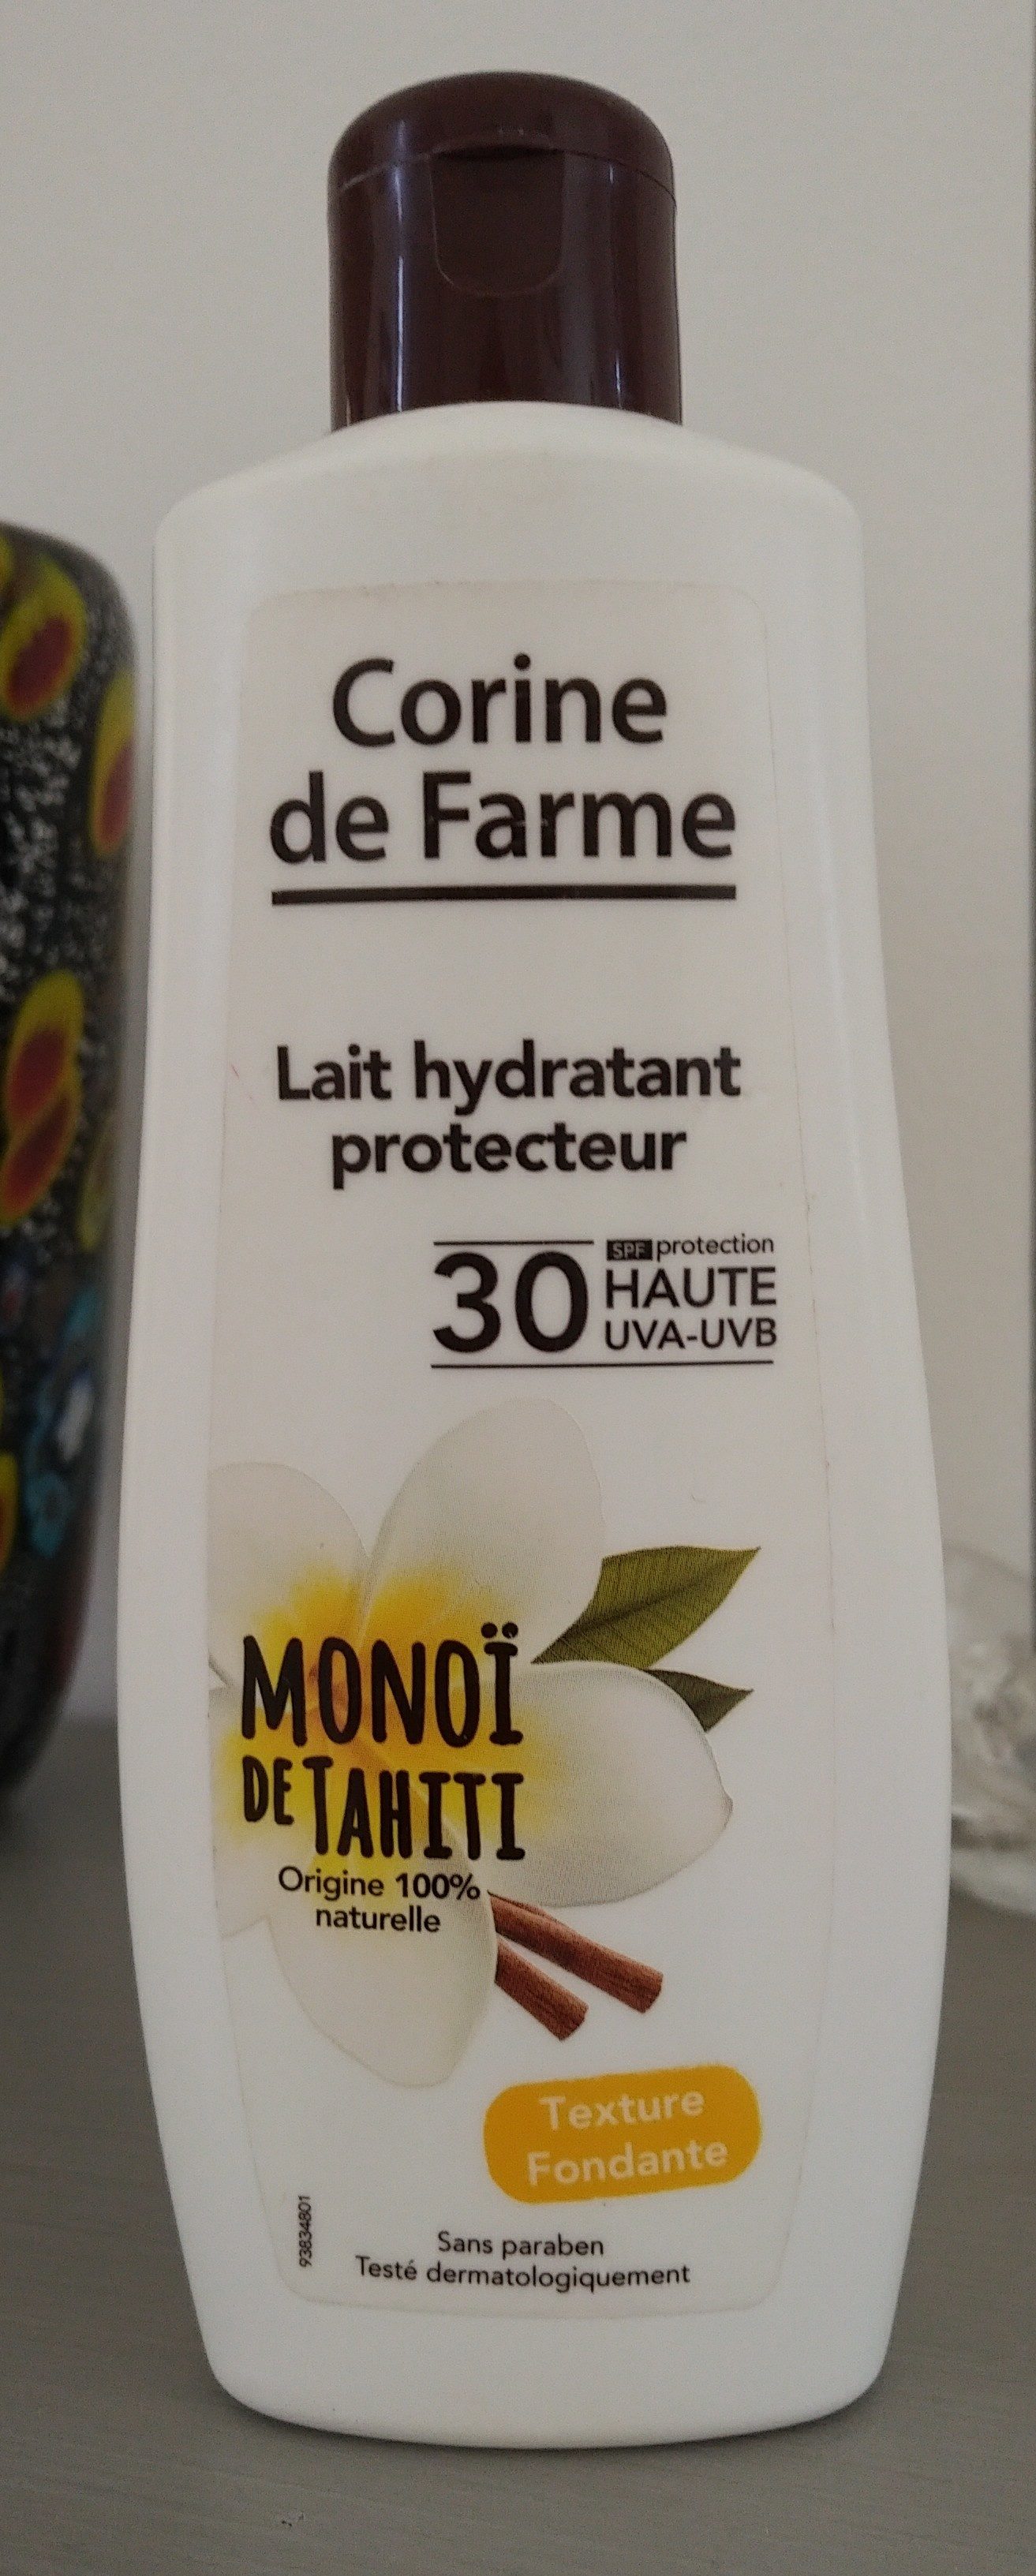 Lait hydratant protecteur monoï de tahiti - Produit - fr